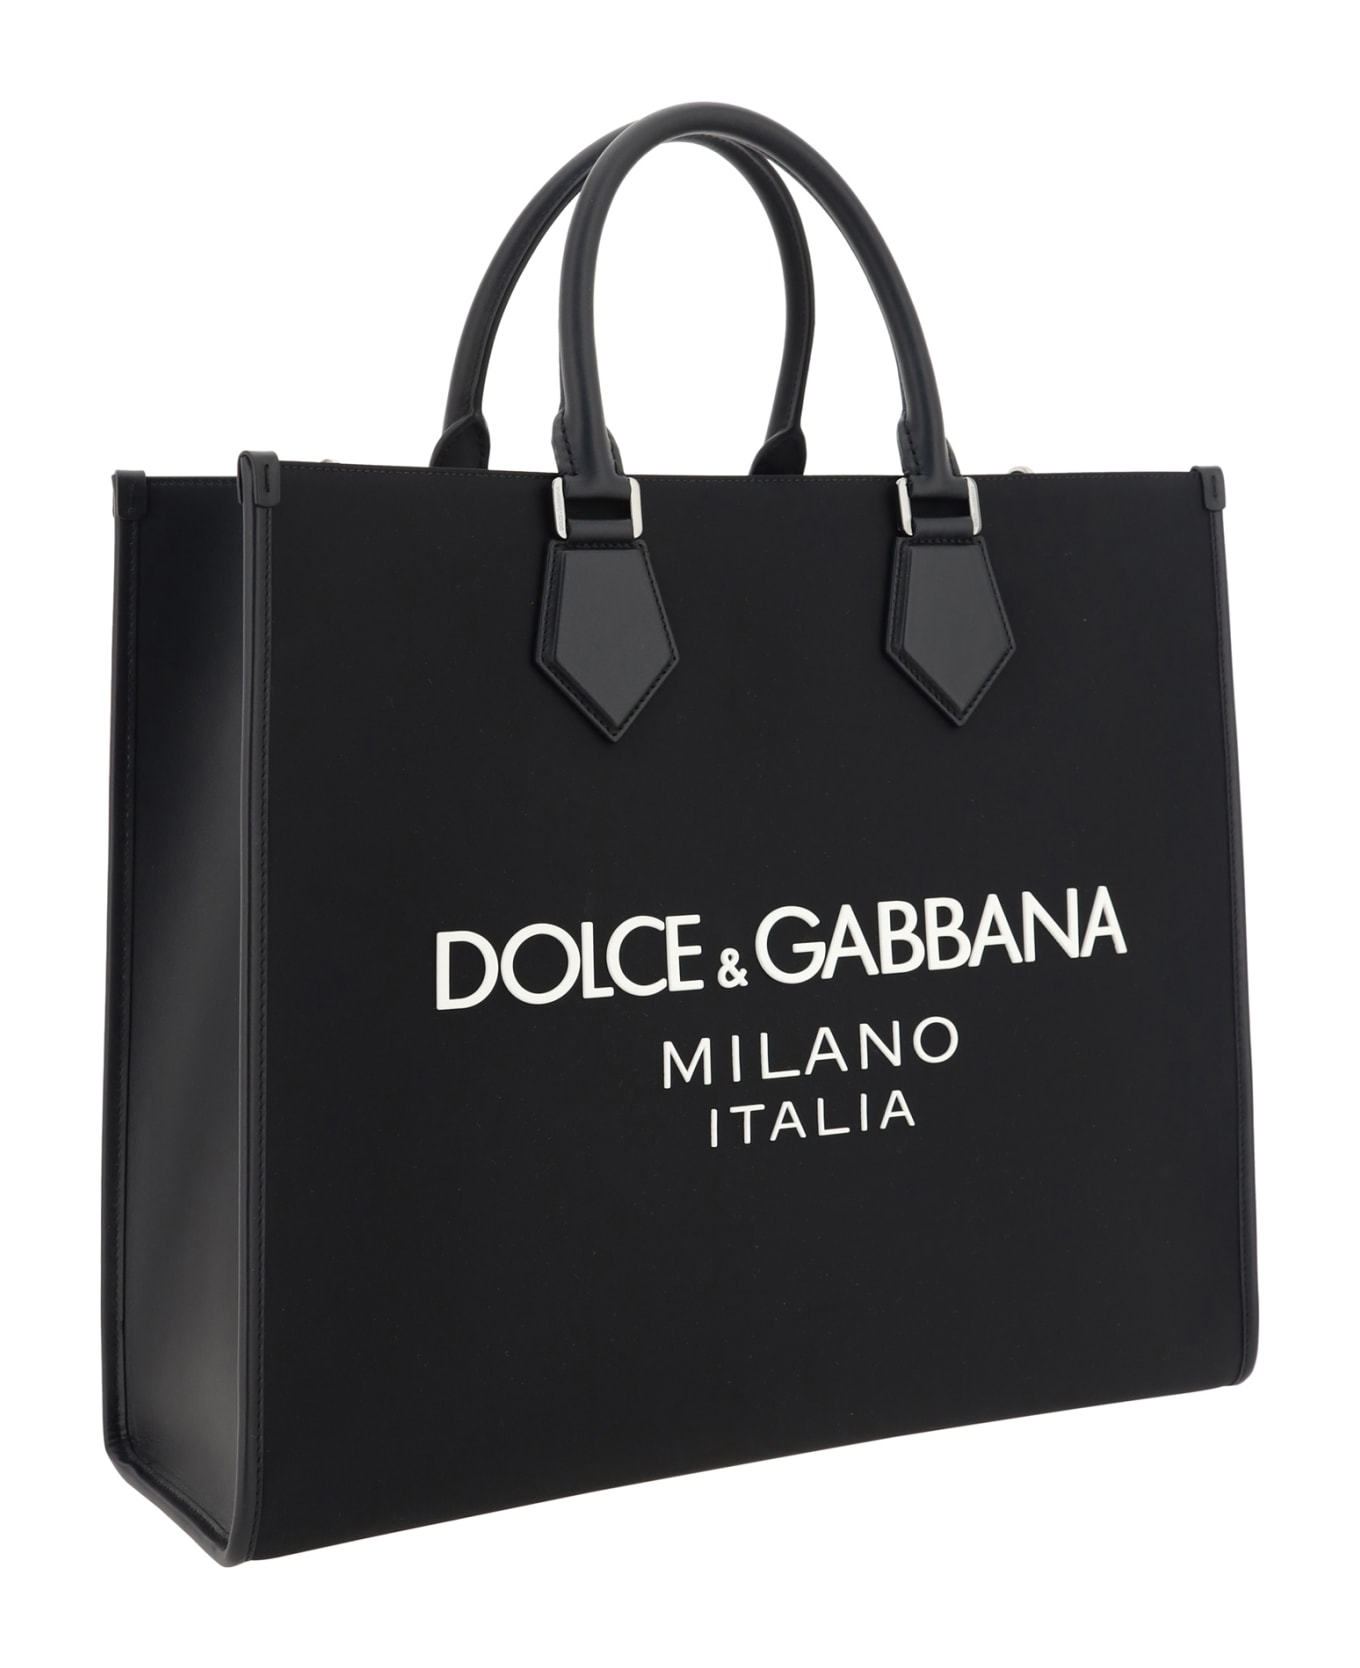 Dolce & Gabbana Tote Bag - Nero/nero